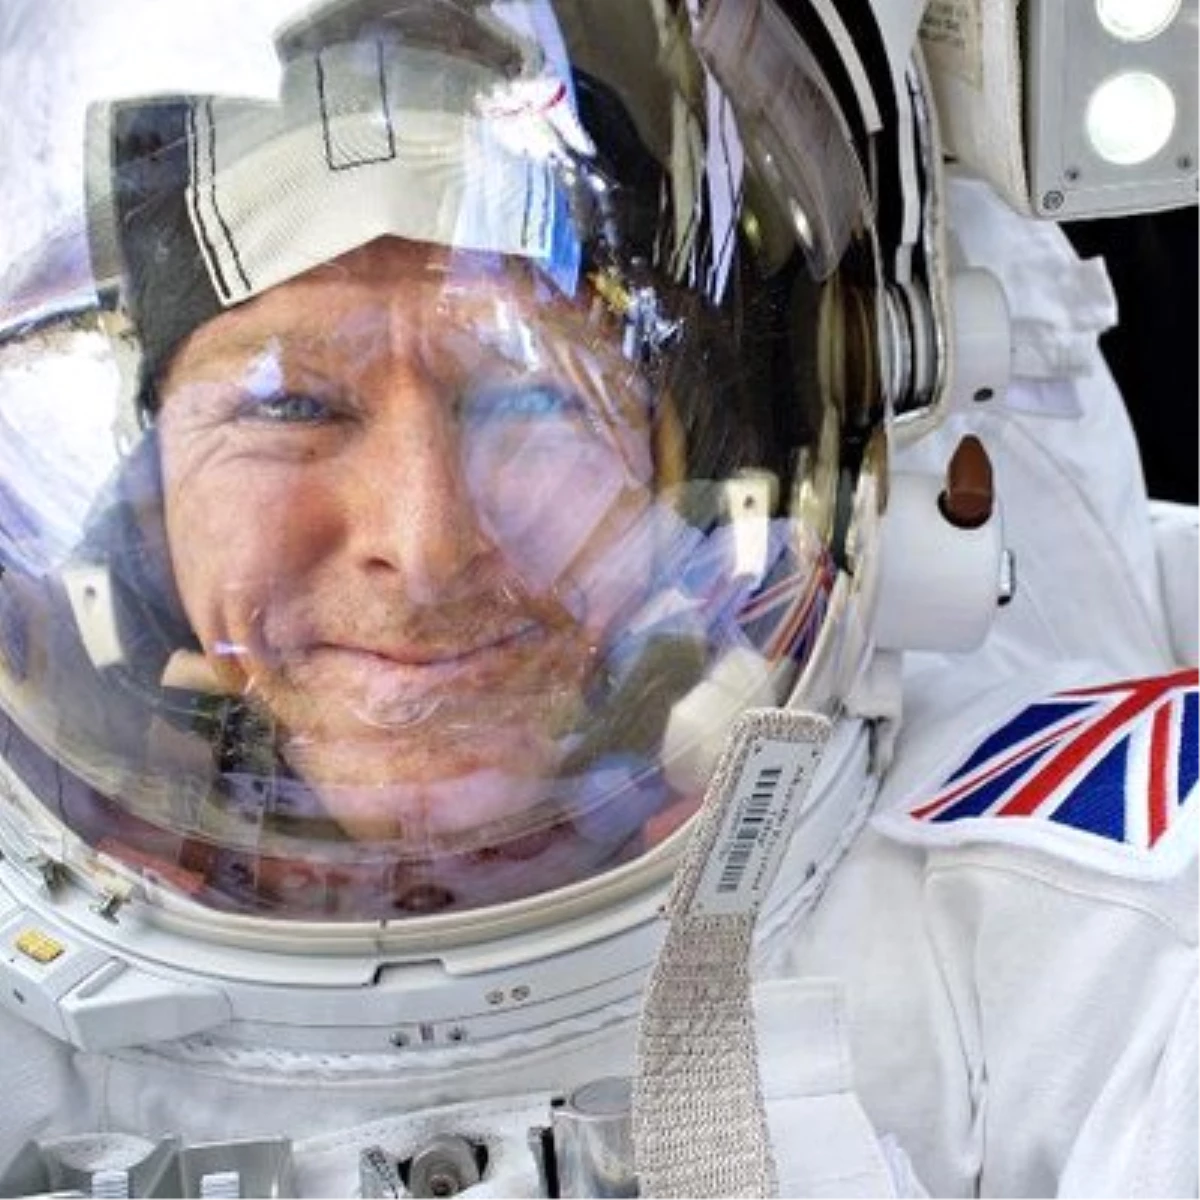 İngiliz Astronot: "Kainatta Hayat Var Ama Zeki Yaşam Formu Çok Az"